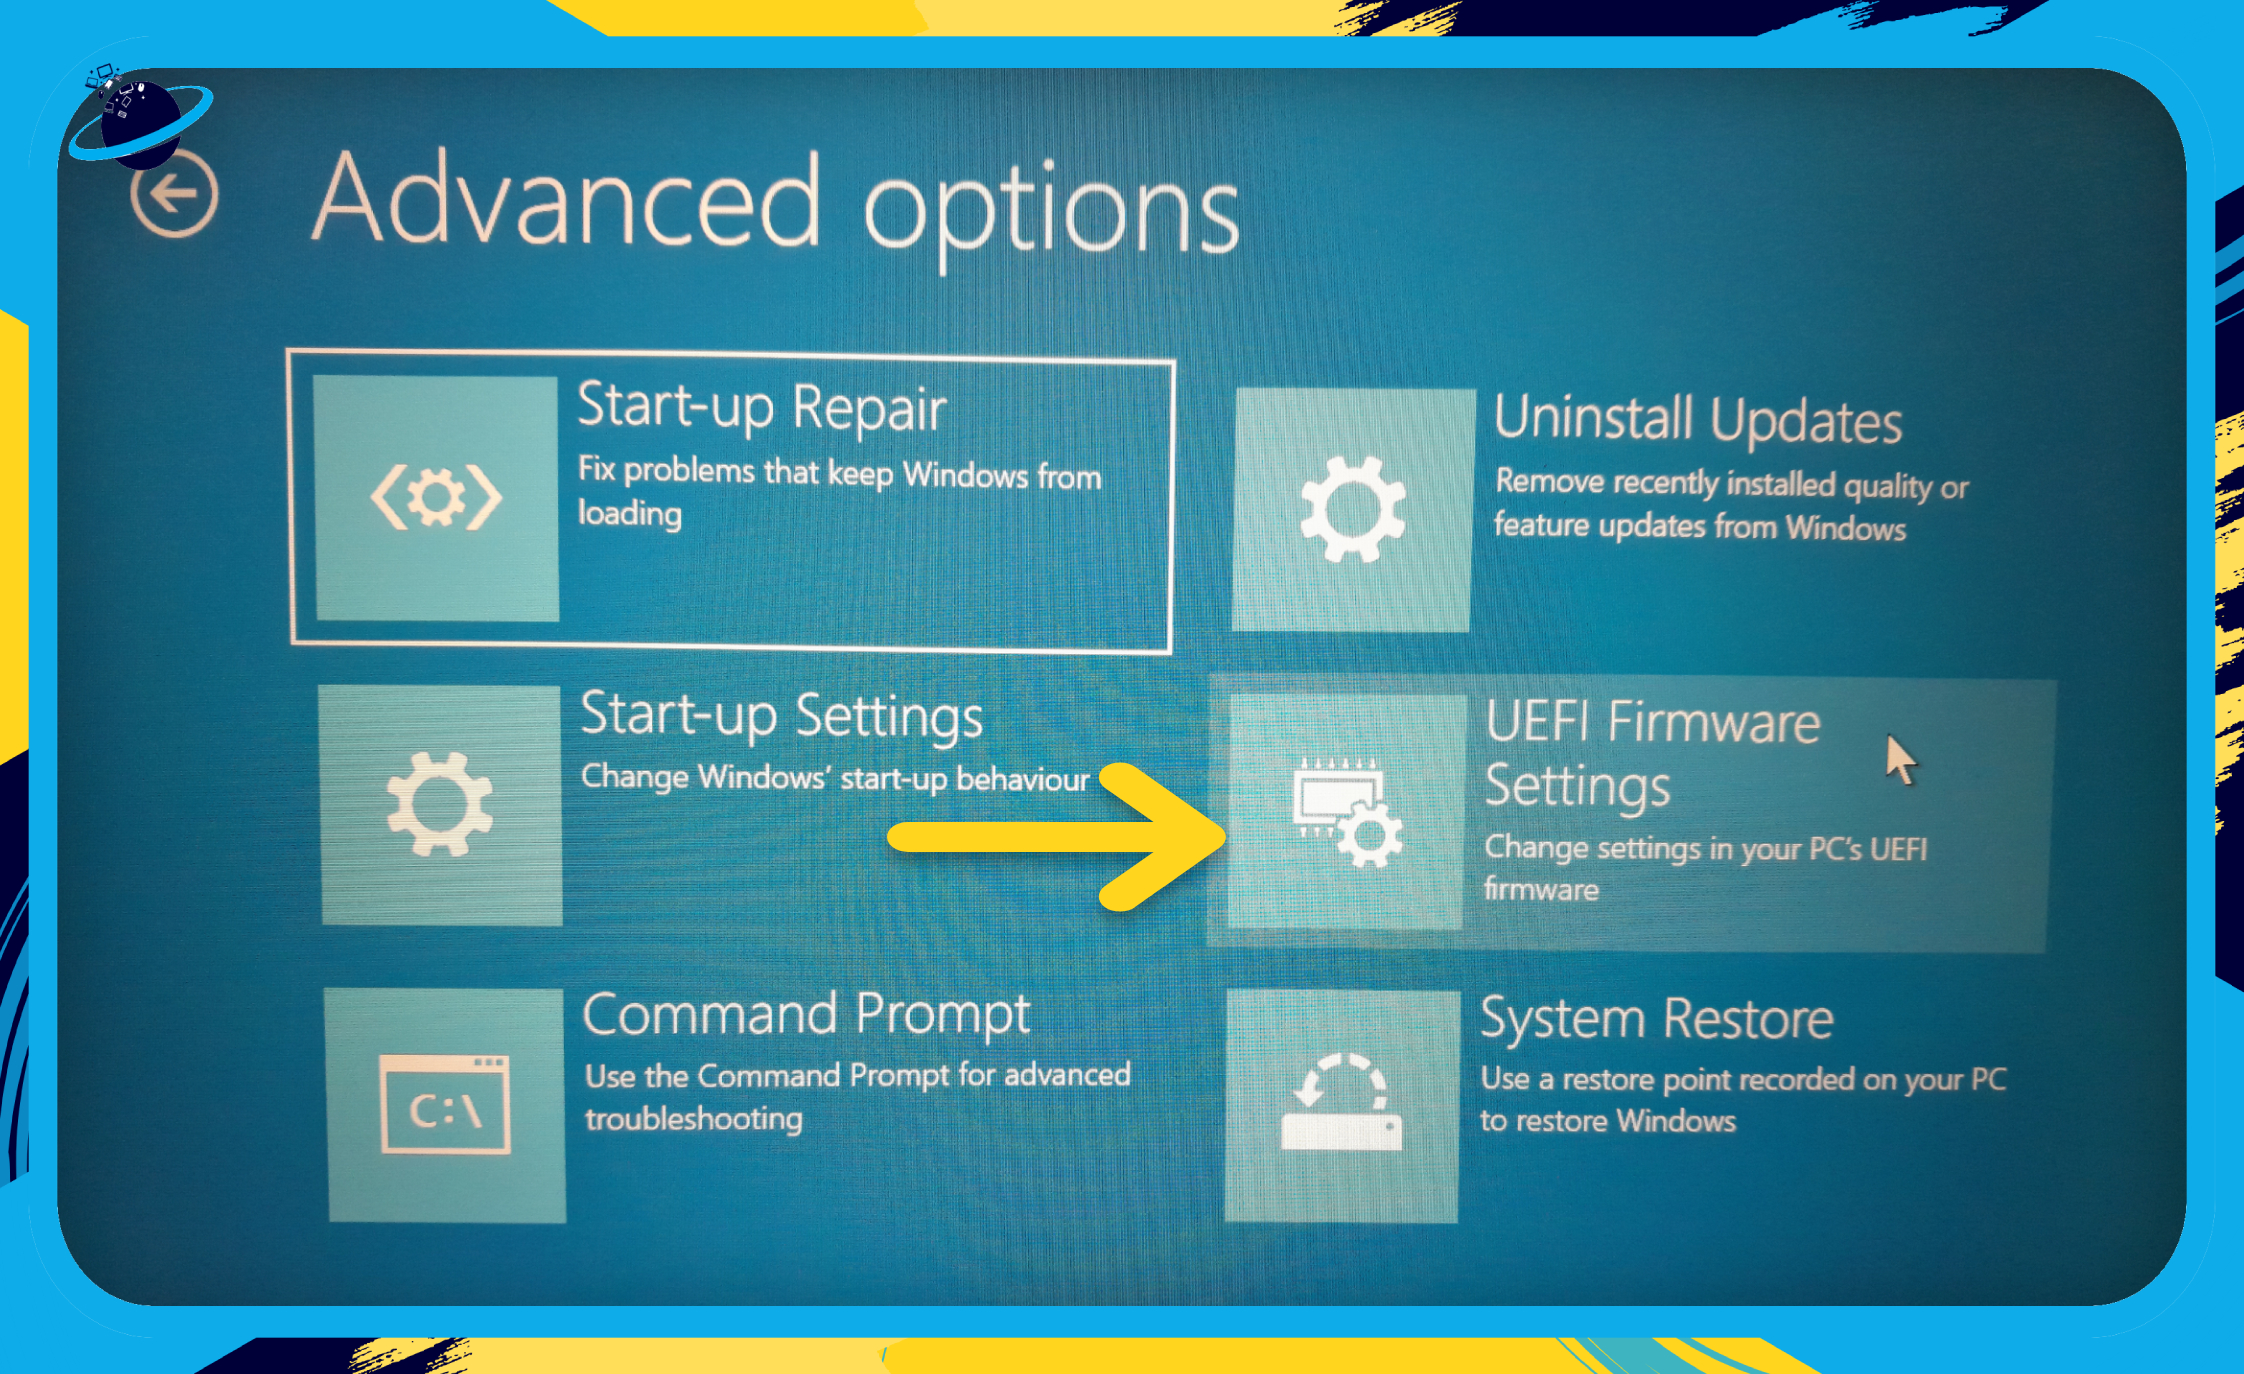 Go to "UEFI Firmware settings."